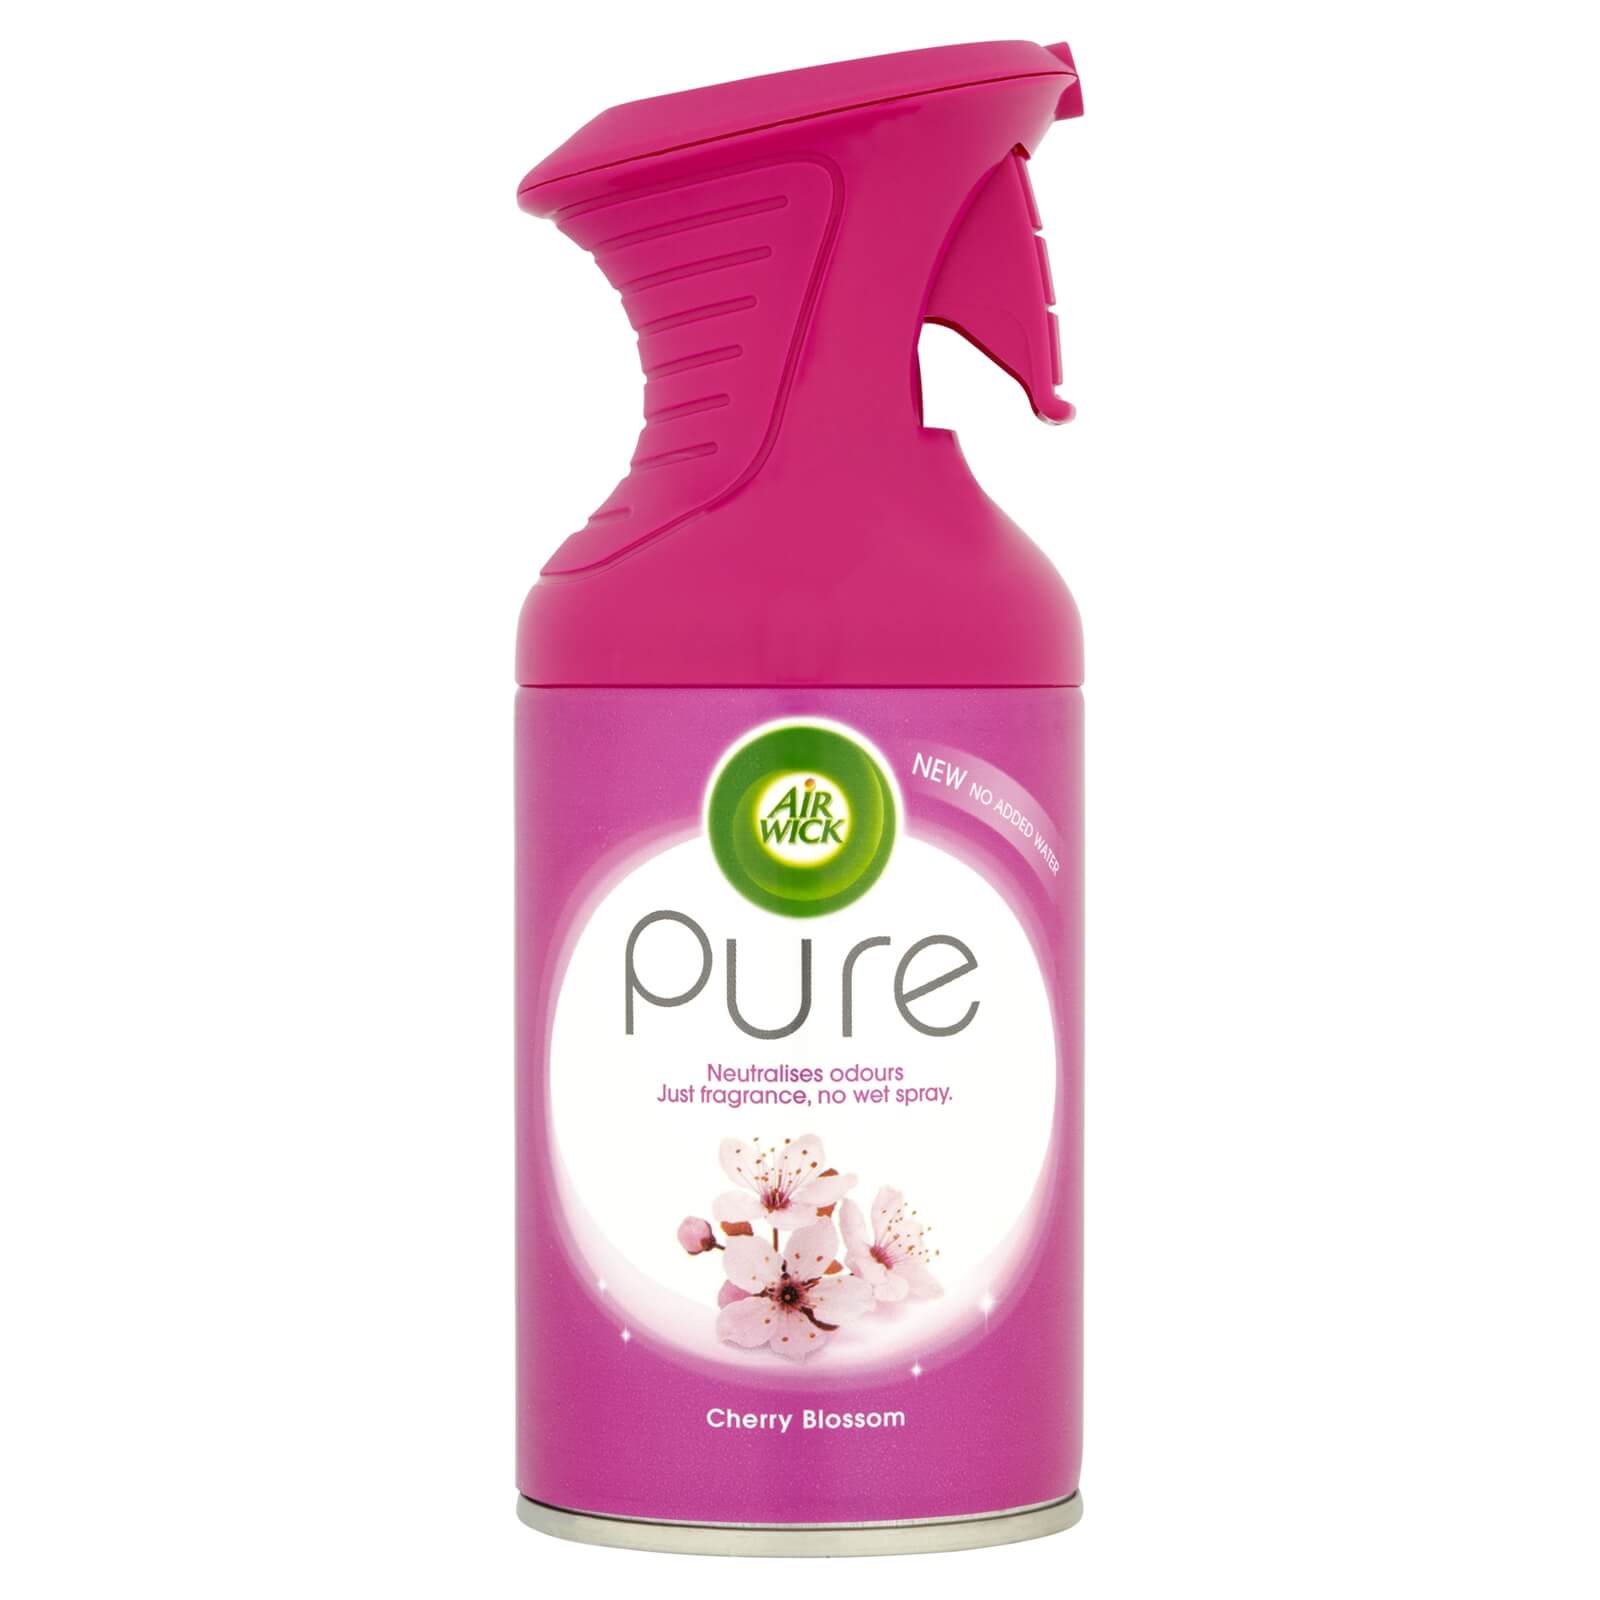 Airwick Pure Cherry Blossom Air Freshener 250ml